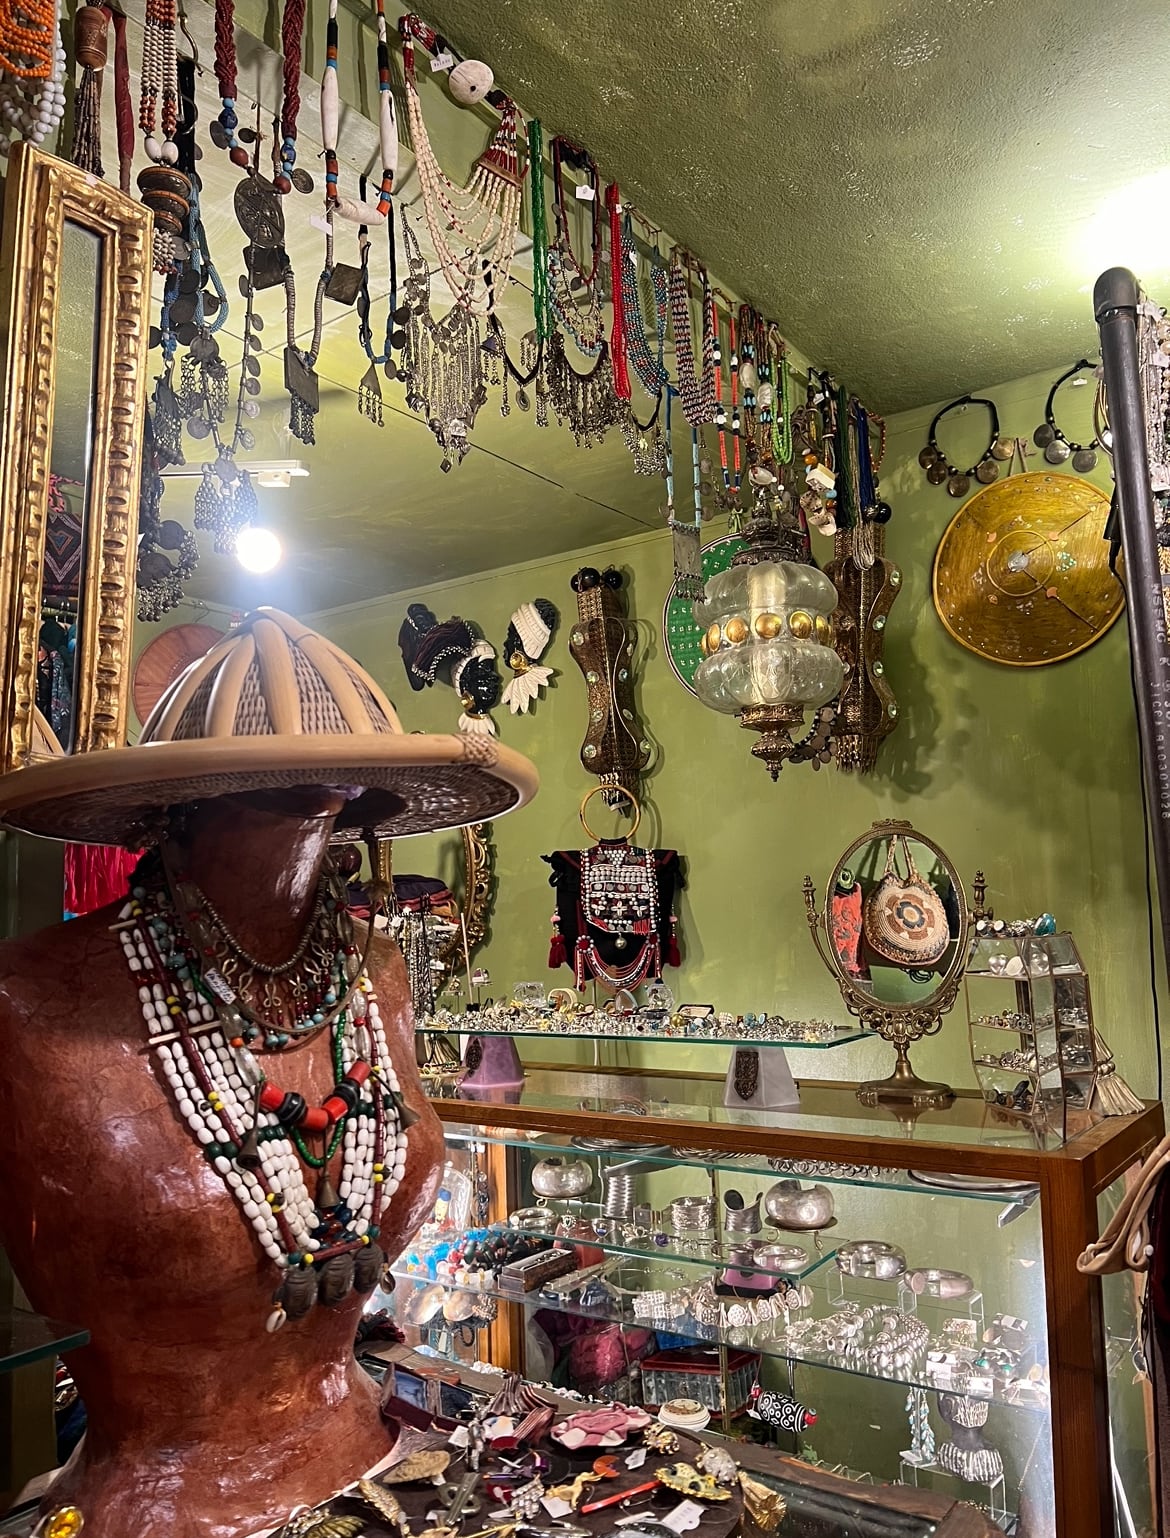 Riyad vintage shop